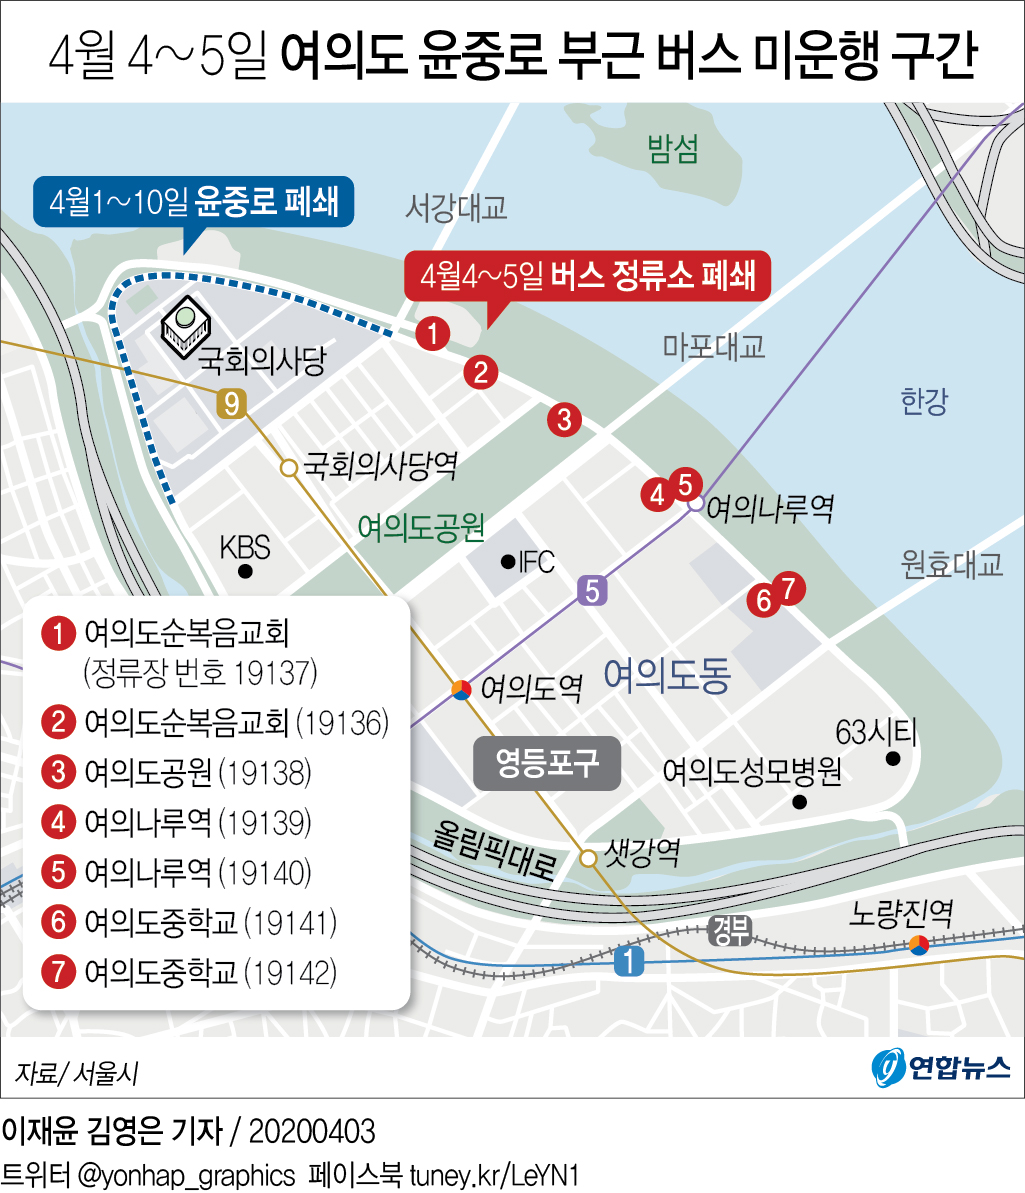 [그래픽] 4월 4∼5일 여의도 윤중로 부근 버스 미운행 구간